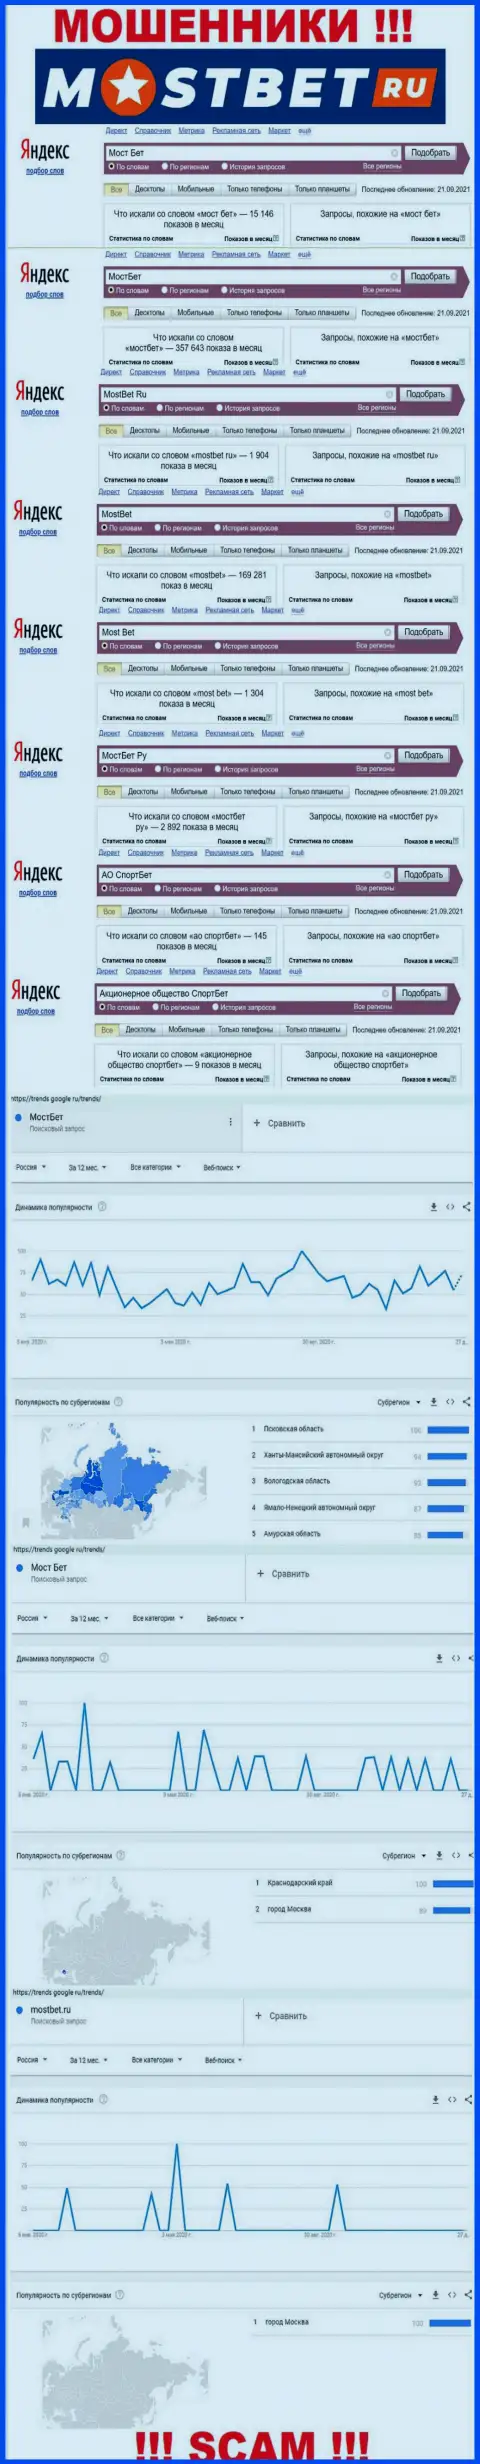 Насколько лохотрон МостБет популярный во всемирной интернет сети ?